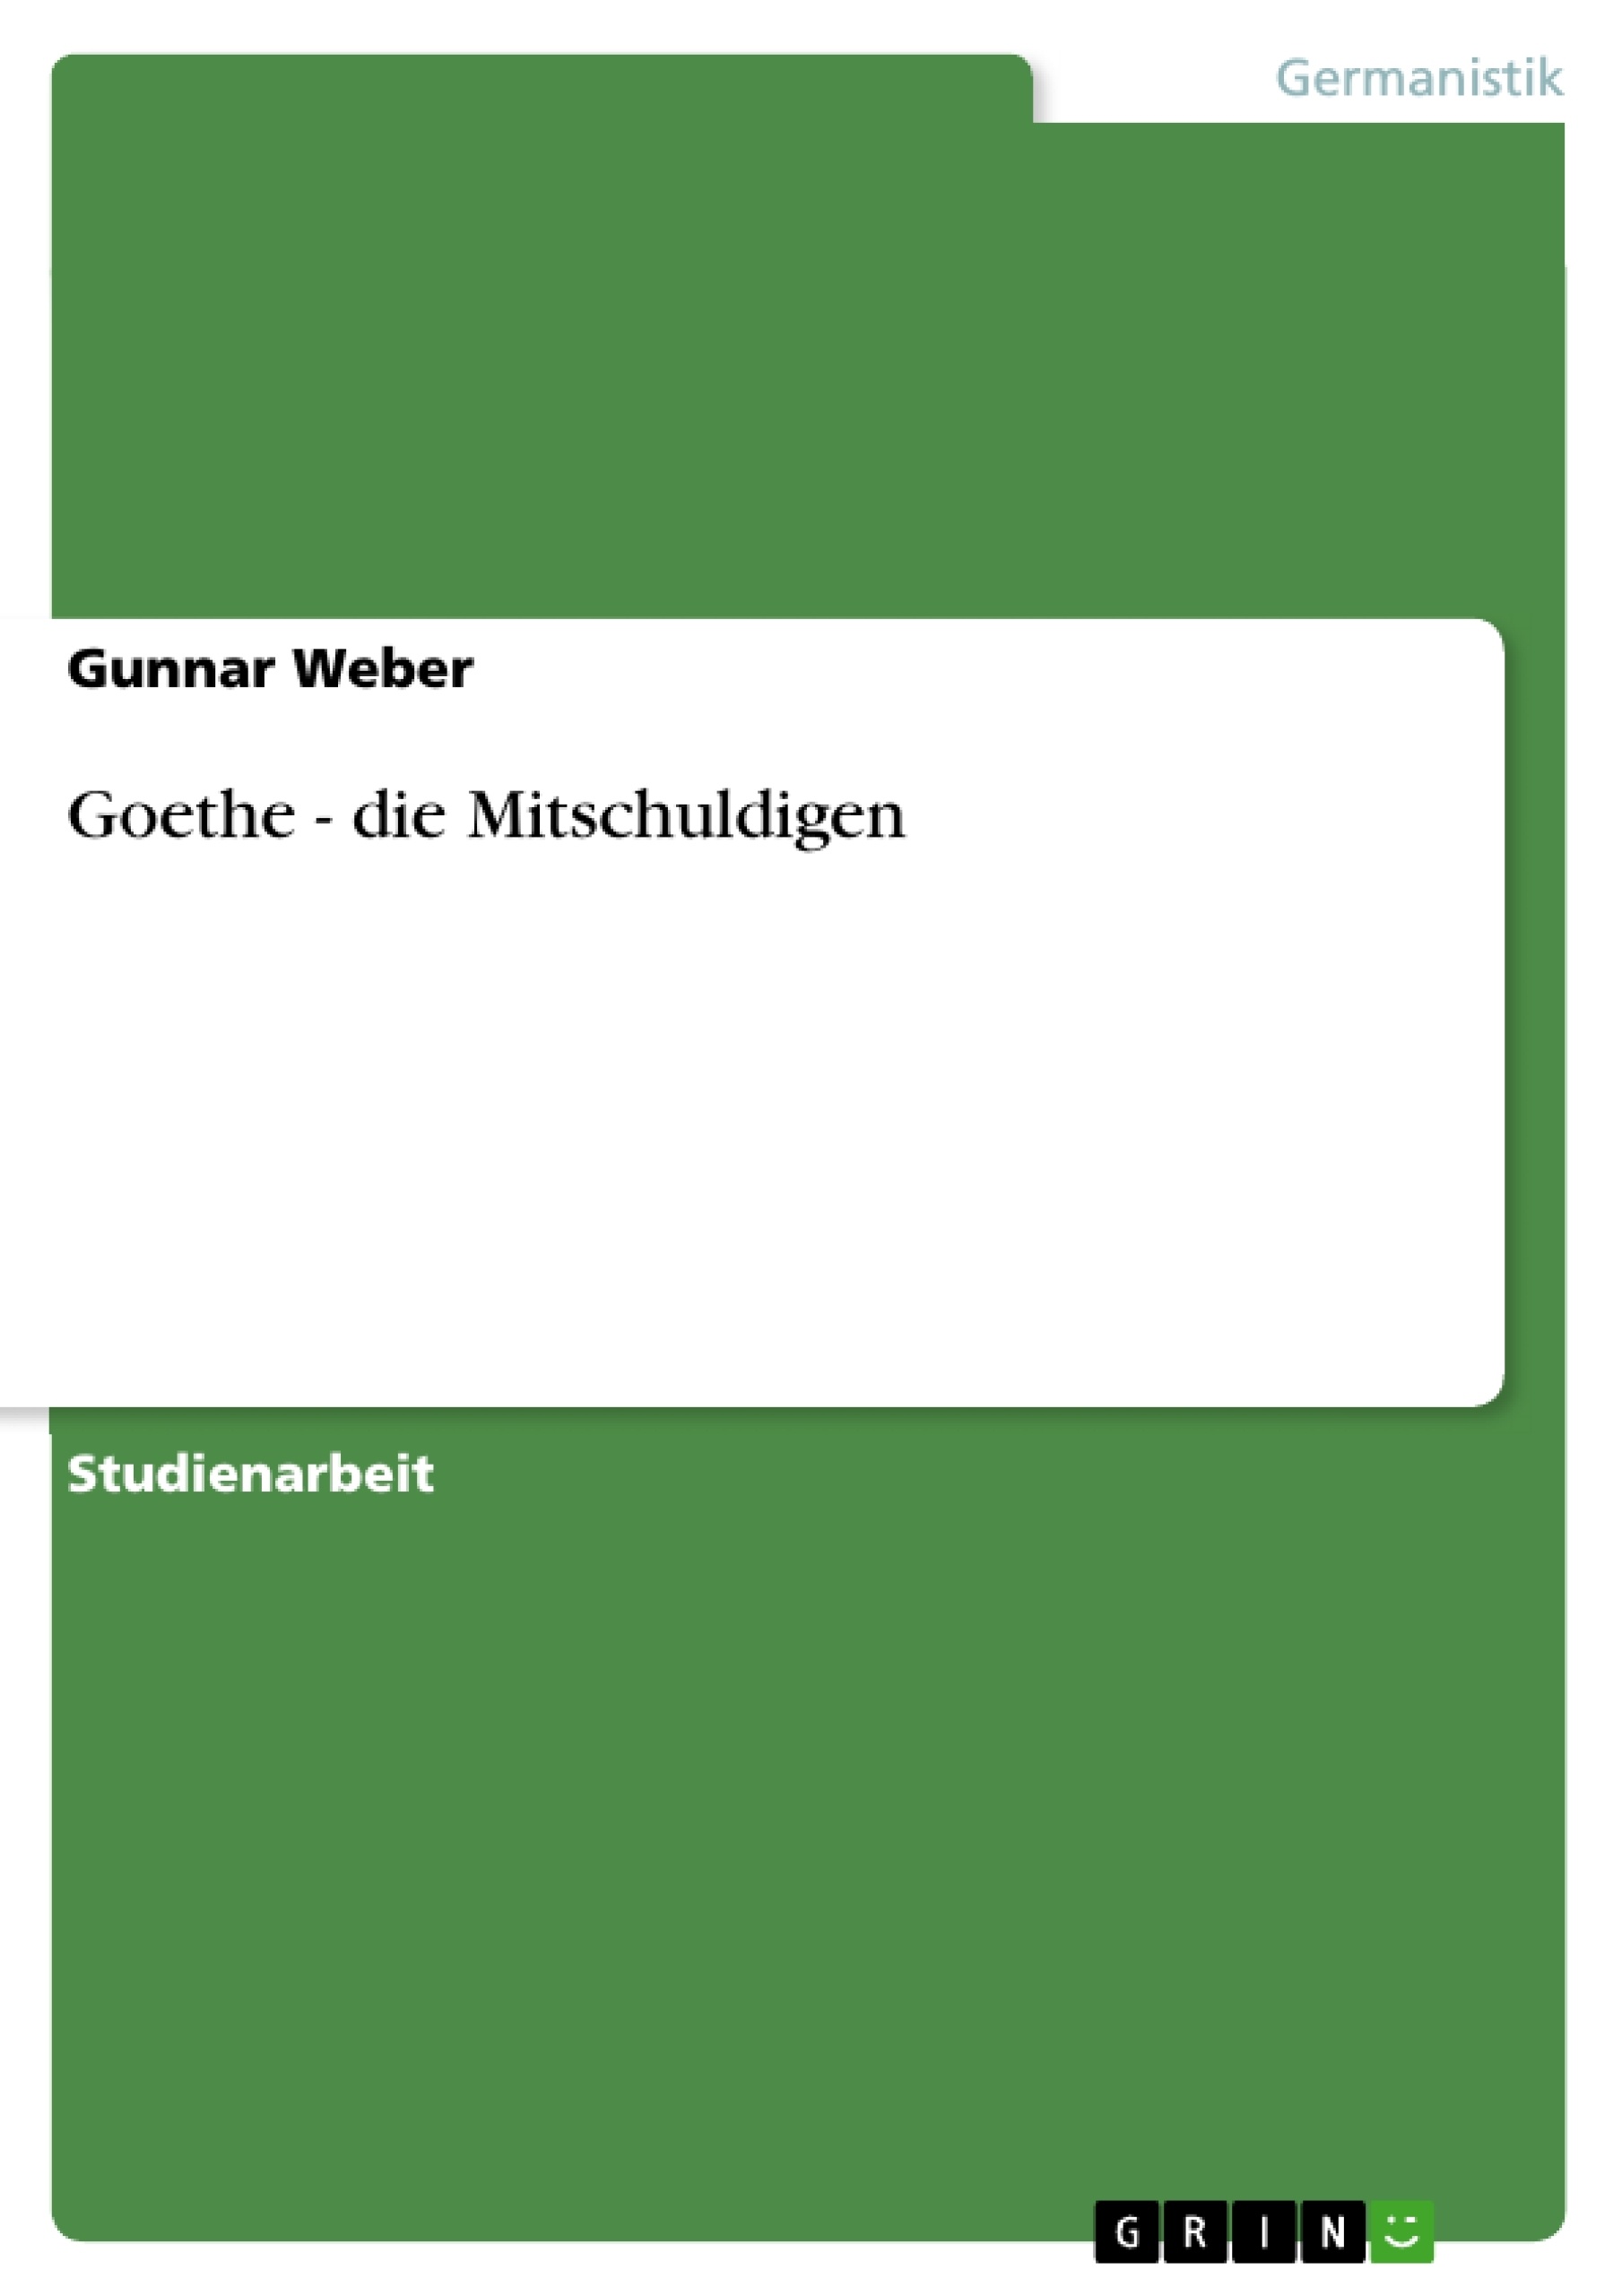 Title: Goethe - die Mitschuldigen